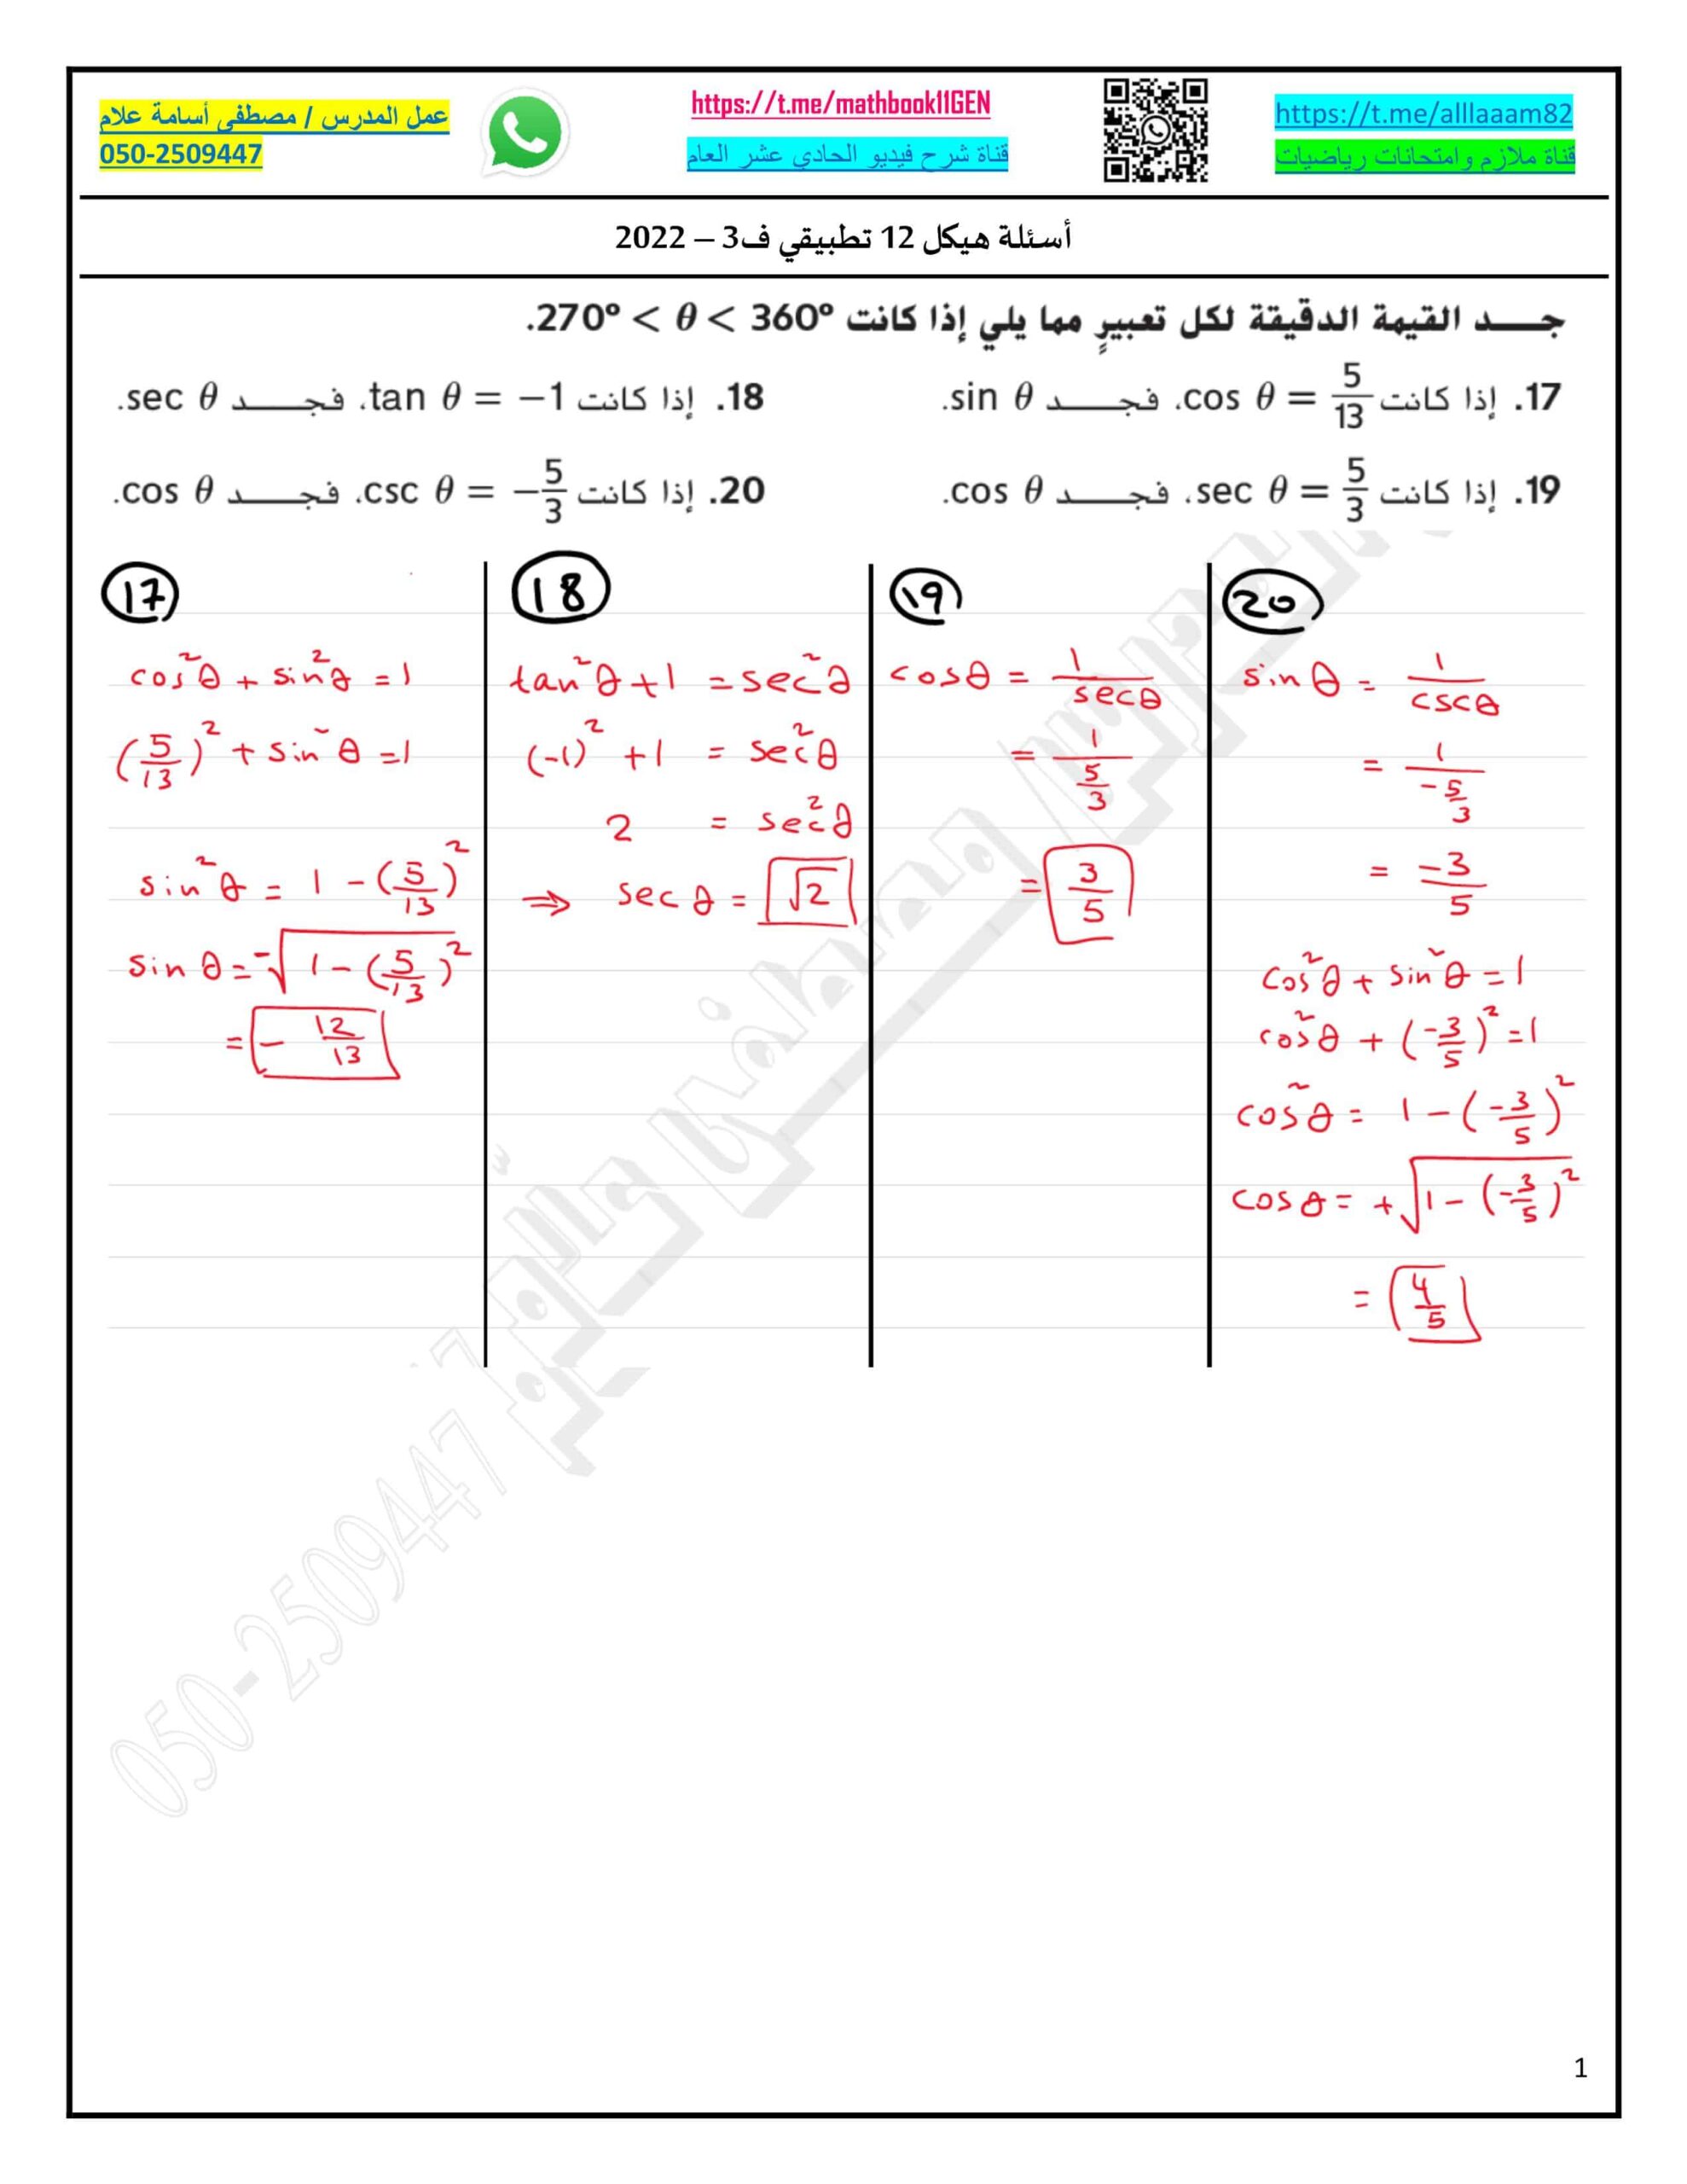 حل أسئلة هيكل امتحان الرياضيات المتكاملة الصف الثاني عشر تطبيقي